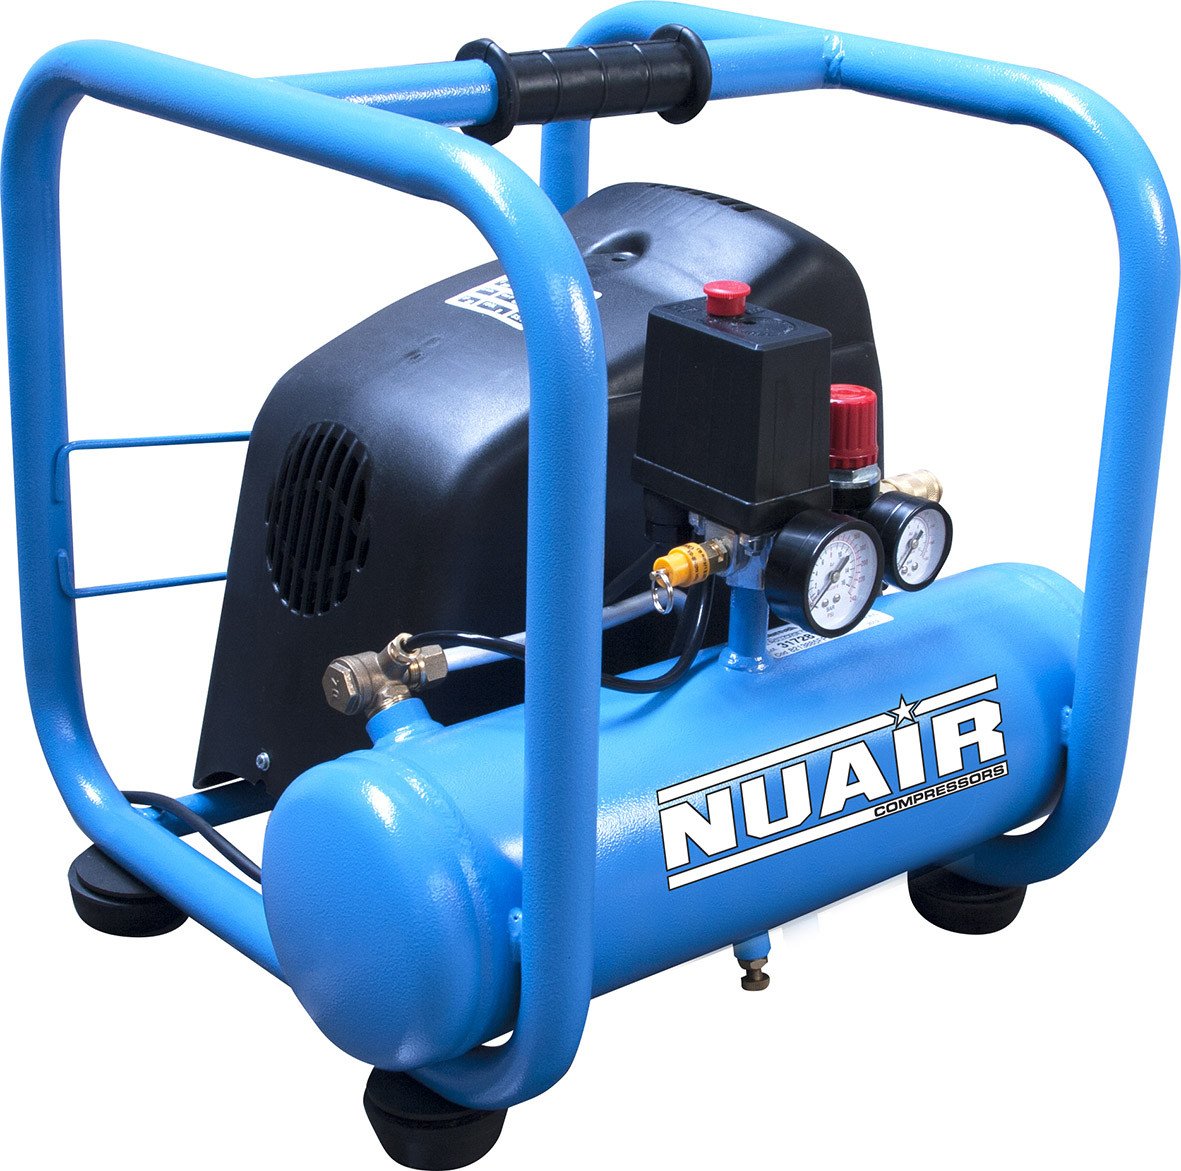 Nuair 6升少油直接驱动空气压缩机- 7.1 CFM 1.5 HP